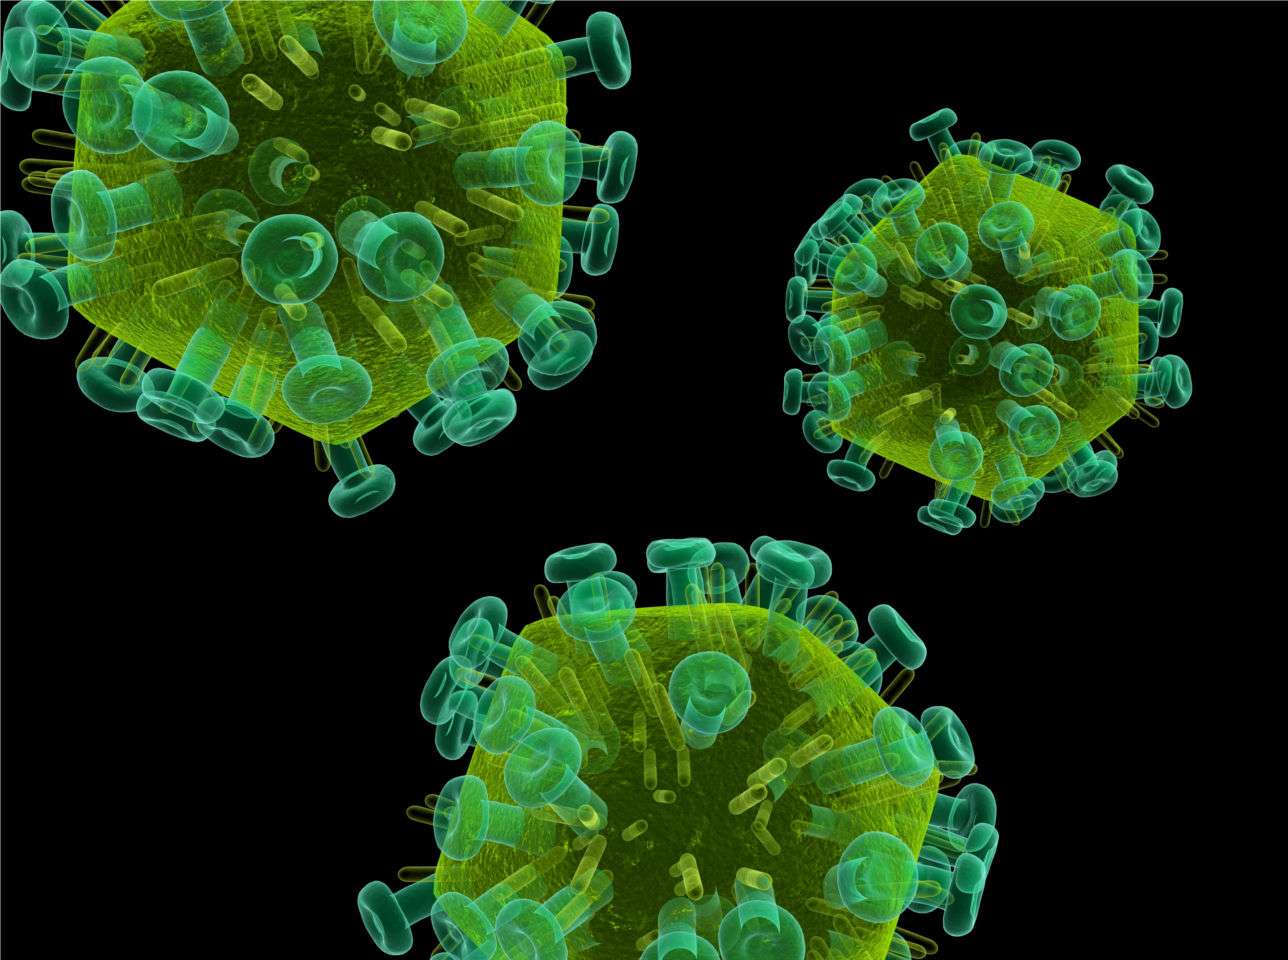 Le VIH, ou virus du Sida, agit en affaiblissant le système immunitaire, rendant ainsi les sujets atteints vulnérables à diverses infections. © Sebastian Kaulitzky, Shutterstock.